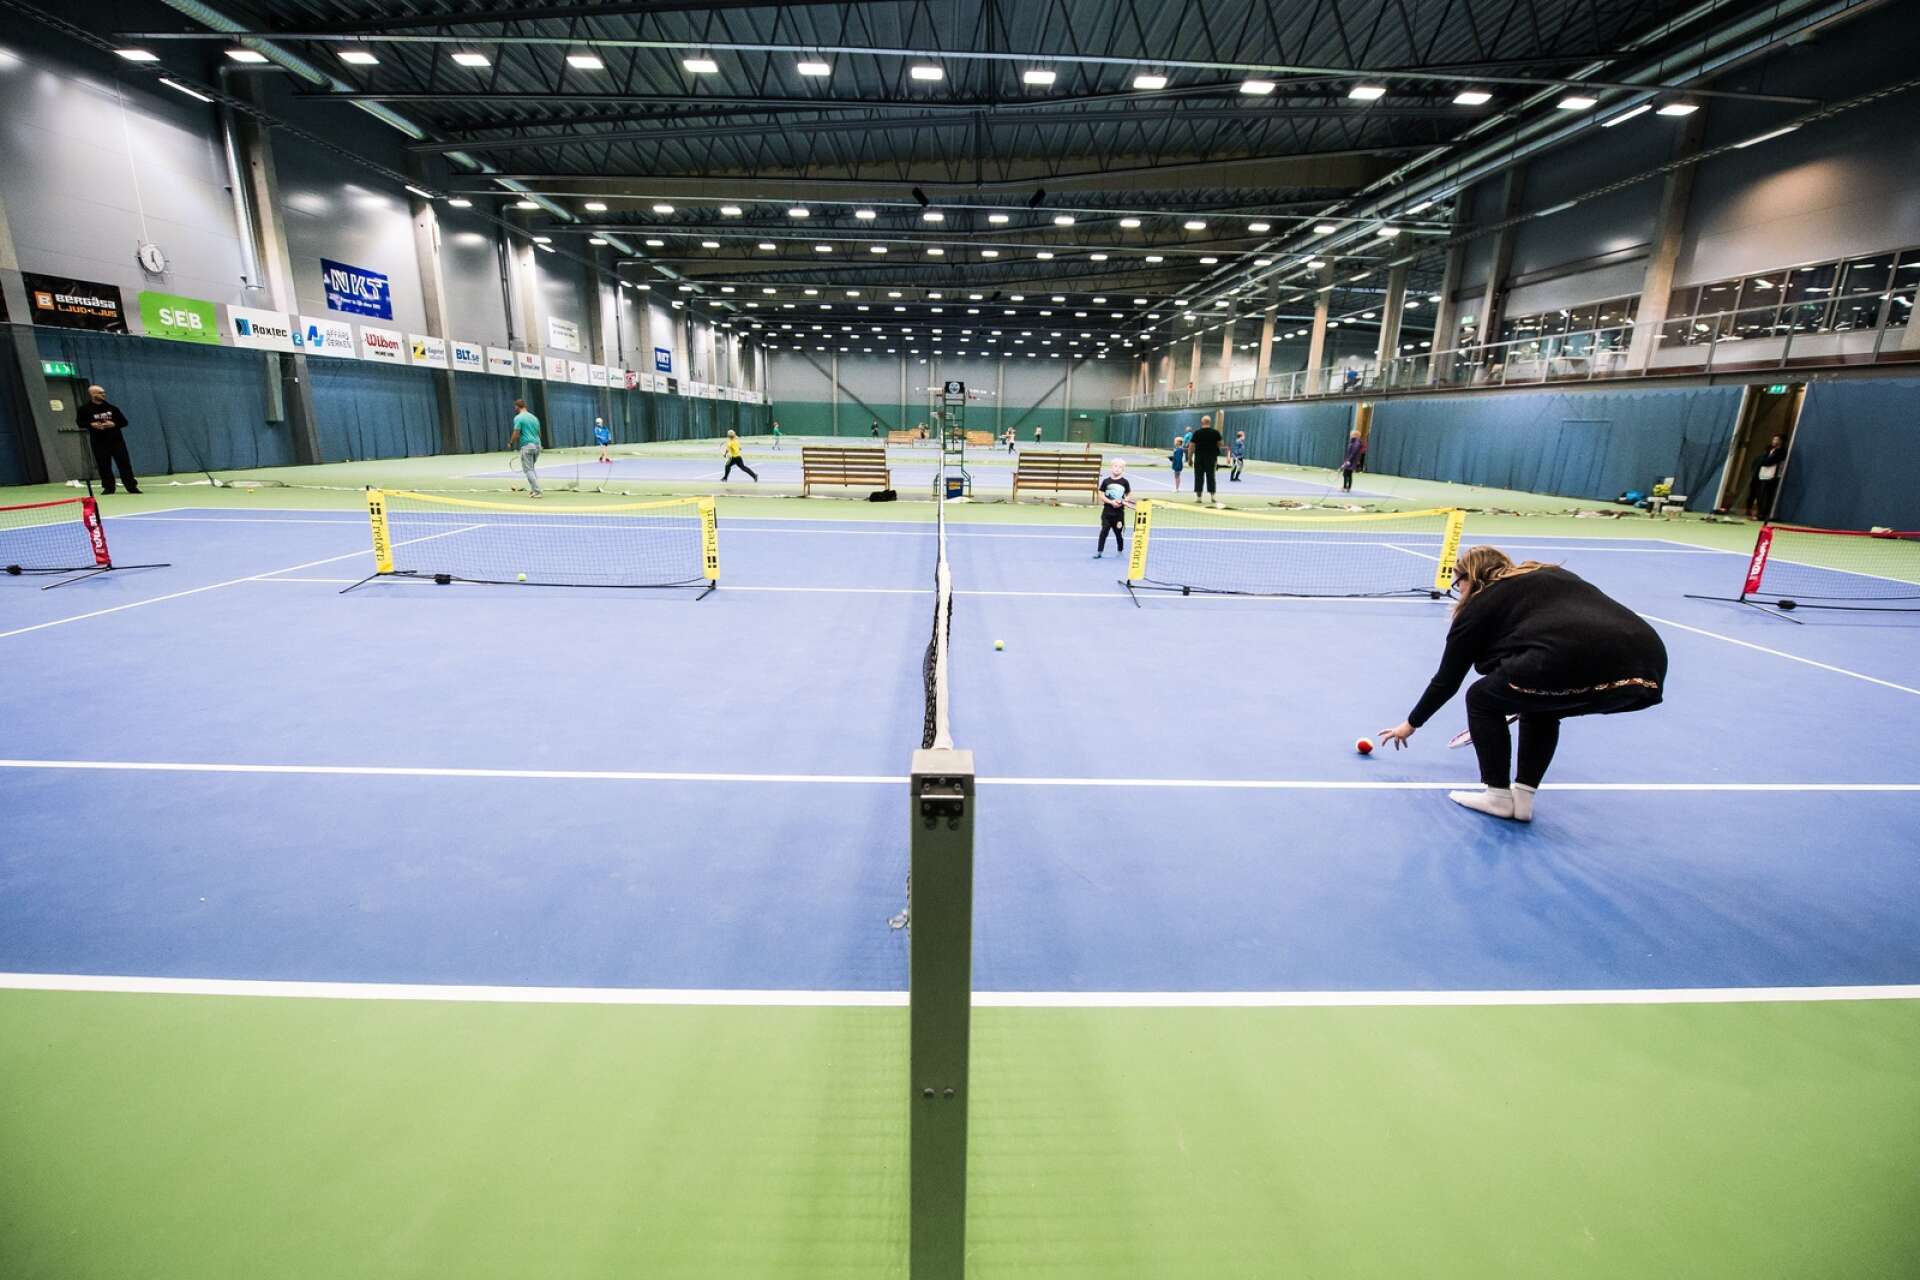 170930 Karlskrona tennishall under idrottens dag på Rosenholm. Det finns en oro bland landets idrottsföreningar för att hallar och anläggningar kommer att stängas i vinter. Foto: Bildbyrån